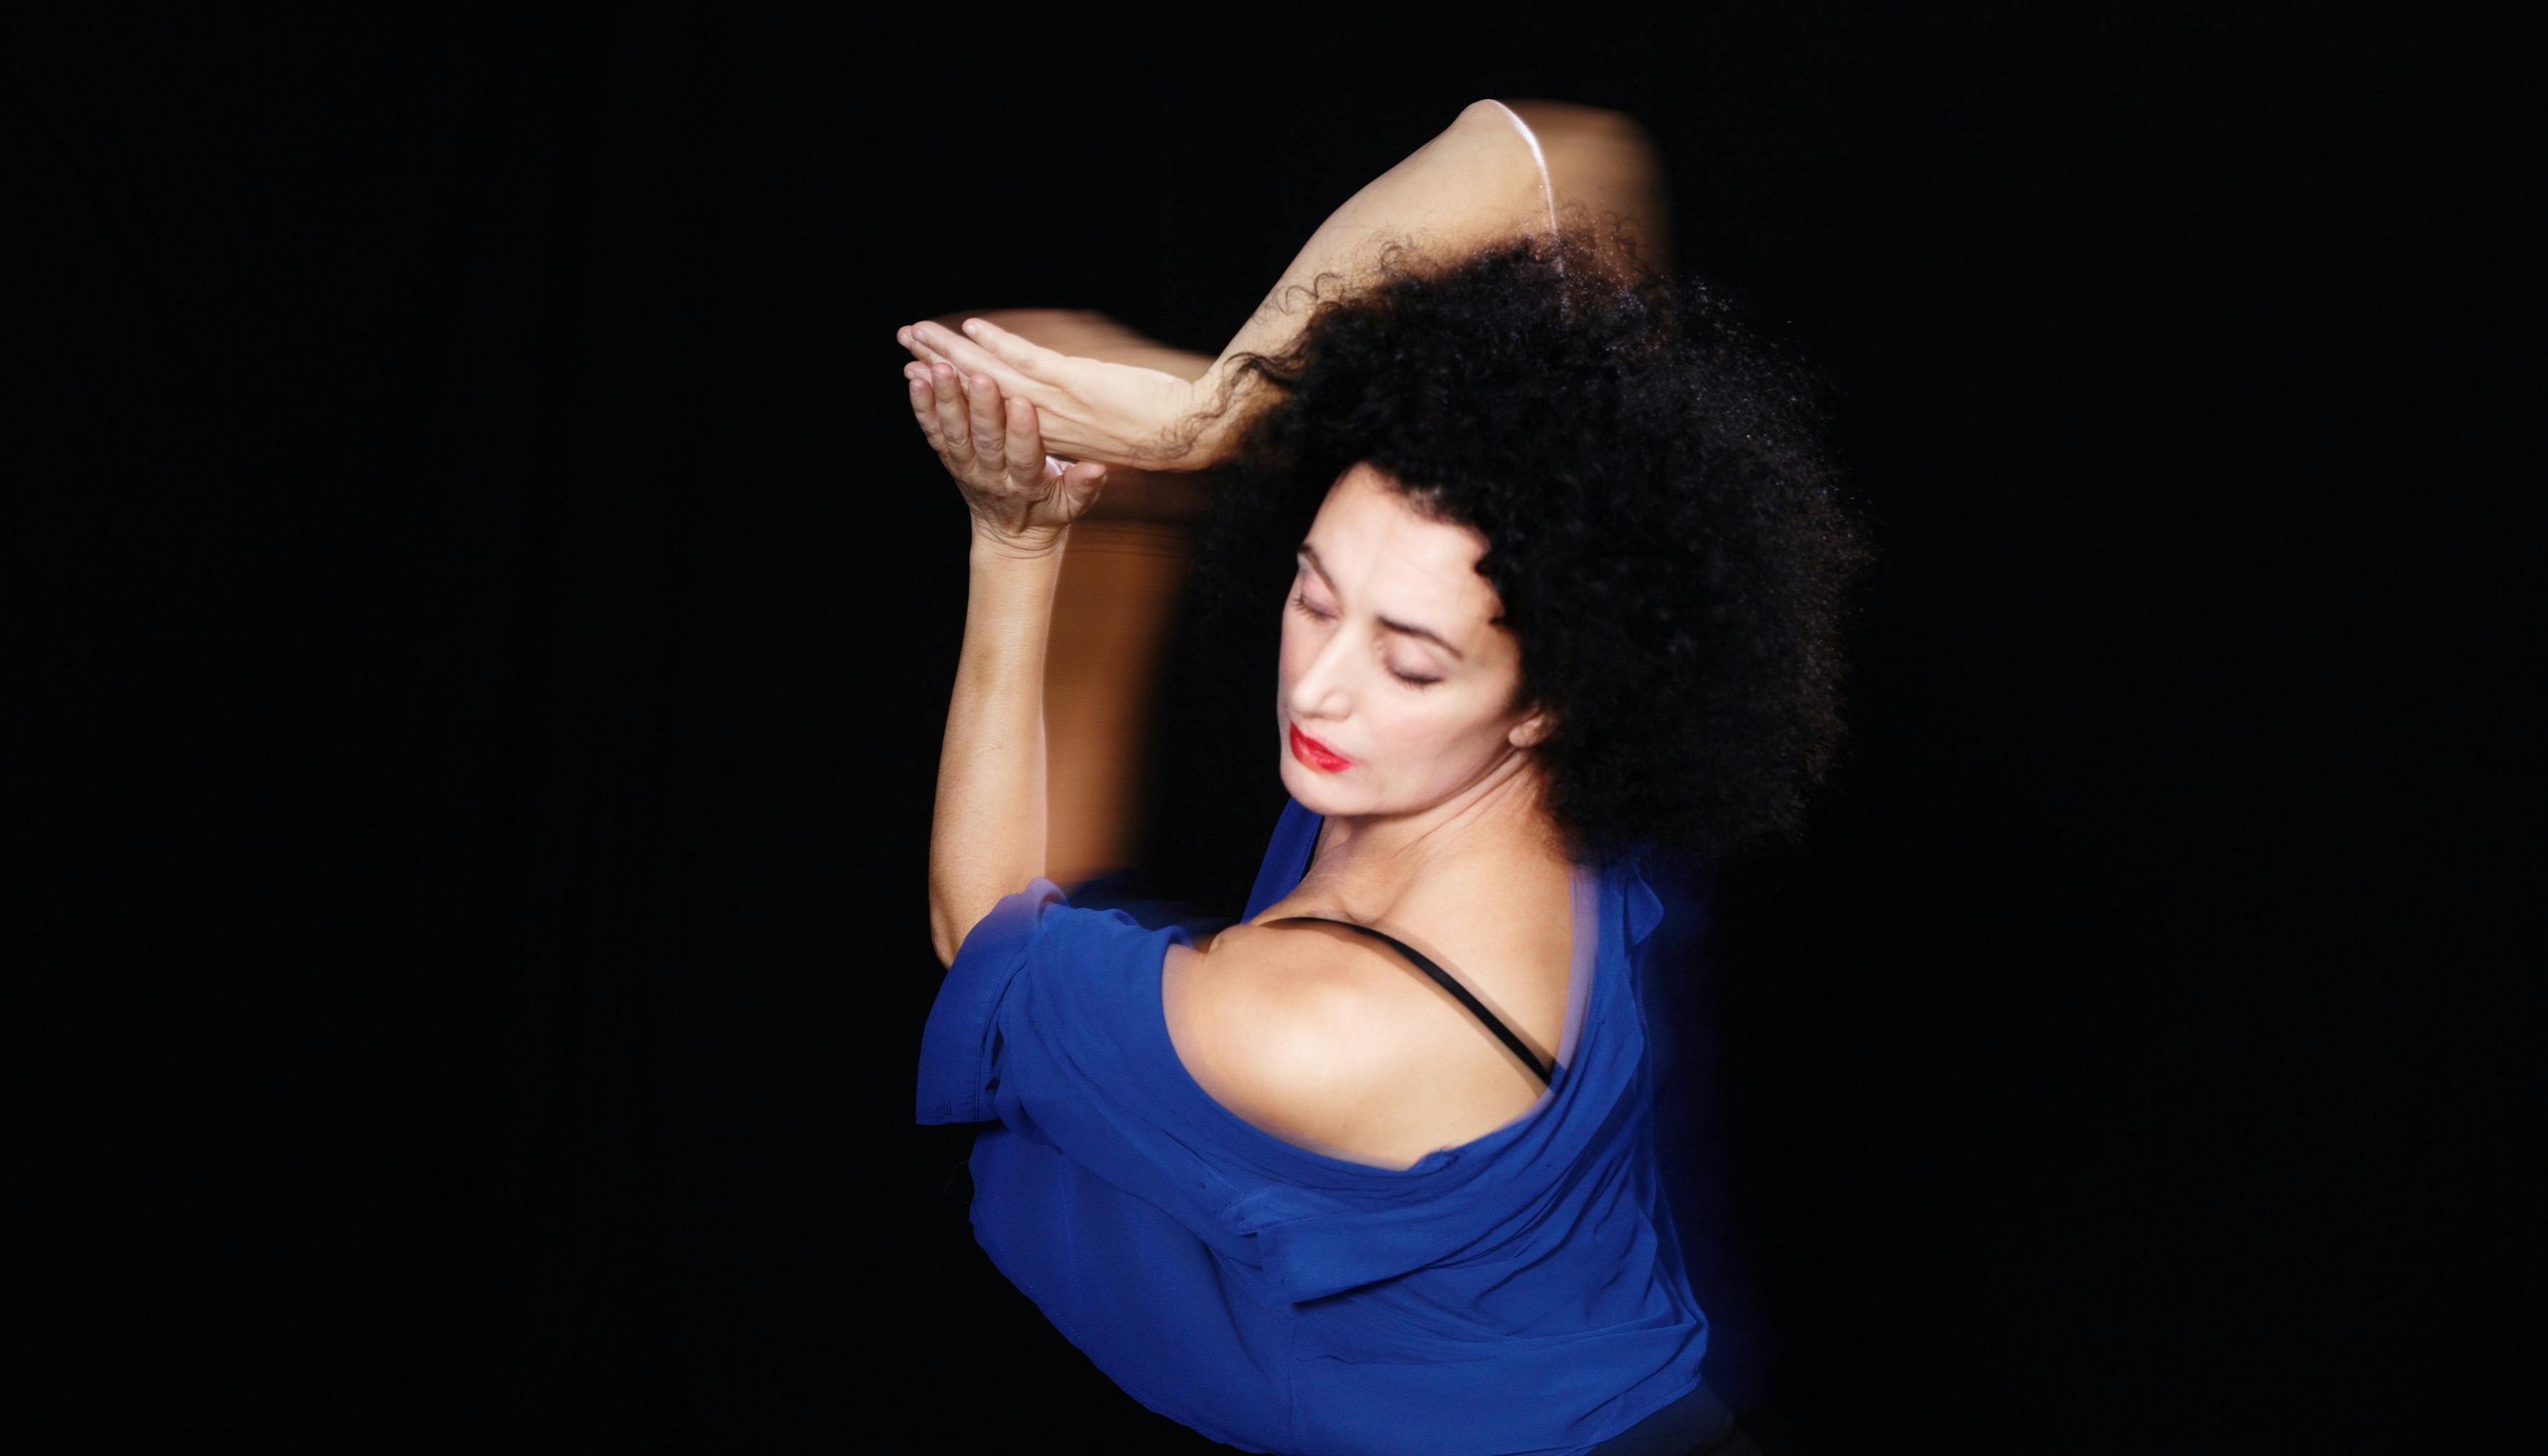 Foto su sfondo nero di Cristiana Morganti in posa di danza con le braccia unite semi alzate lateralmente